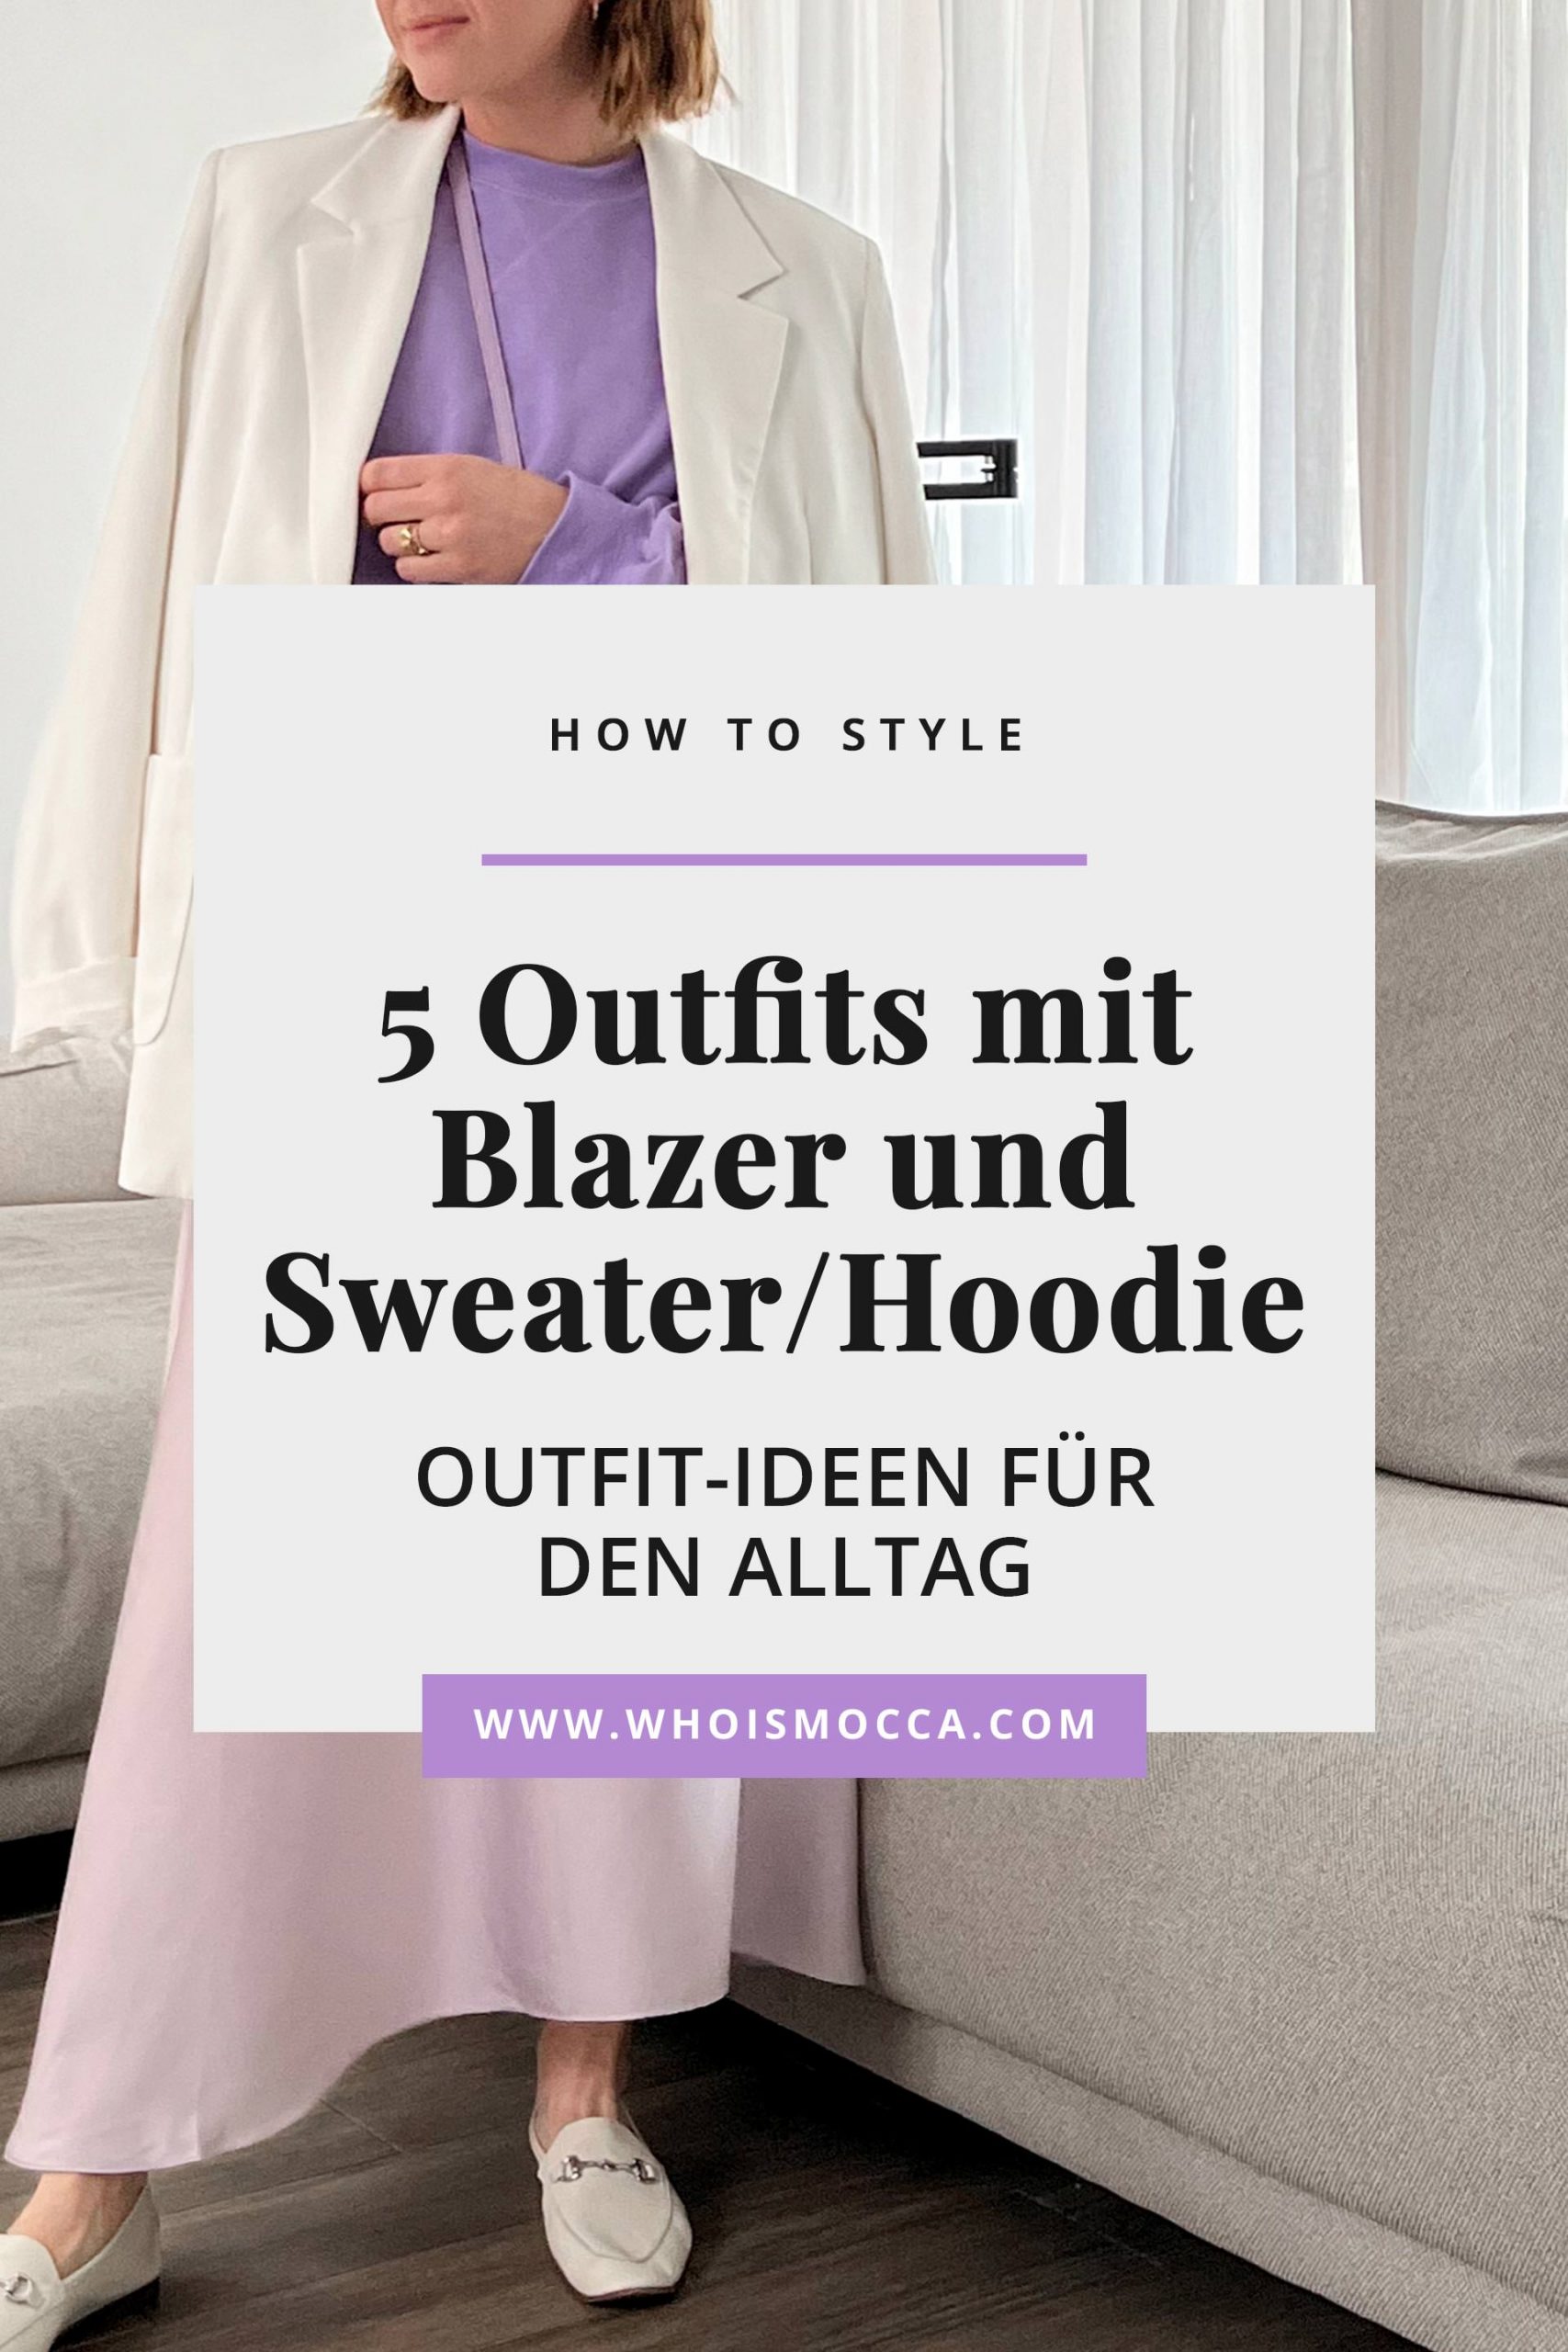 How to style: 5 lässige Outfits mit Blazer und Sweater/Hoodie findest du jetzt am Modeblog www.whoismocca.com